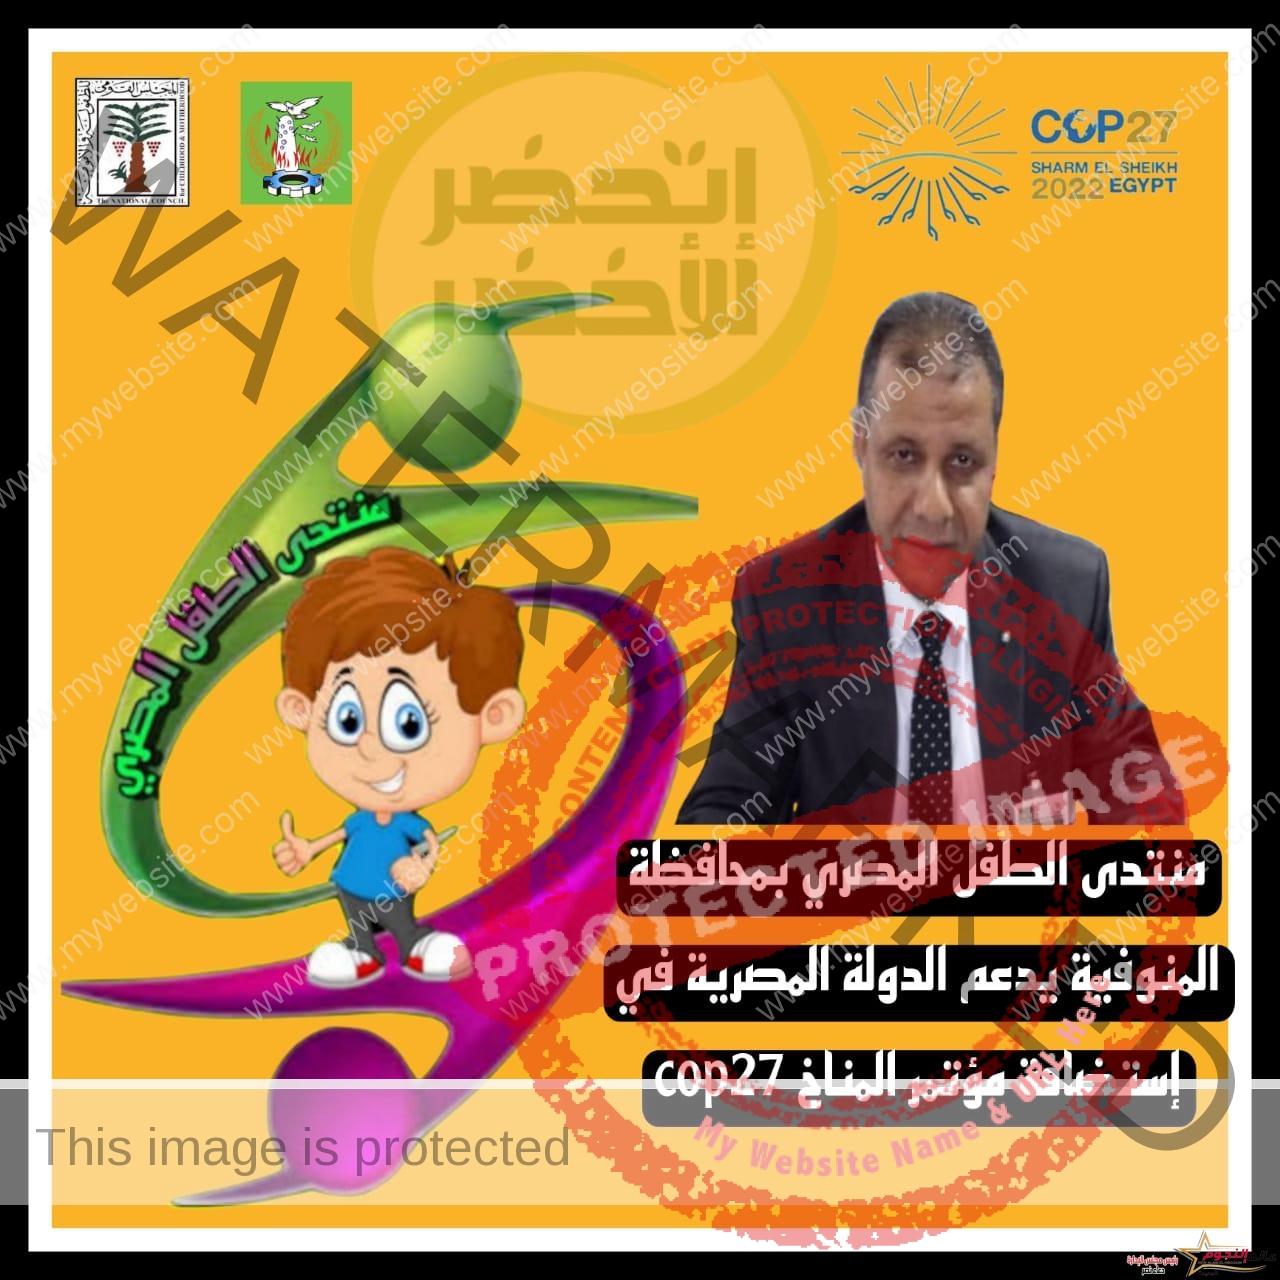 القومي للطفولة: منتدى الطفل المصري يطلق حملة لتوعية الأطفال بحماية البيئة